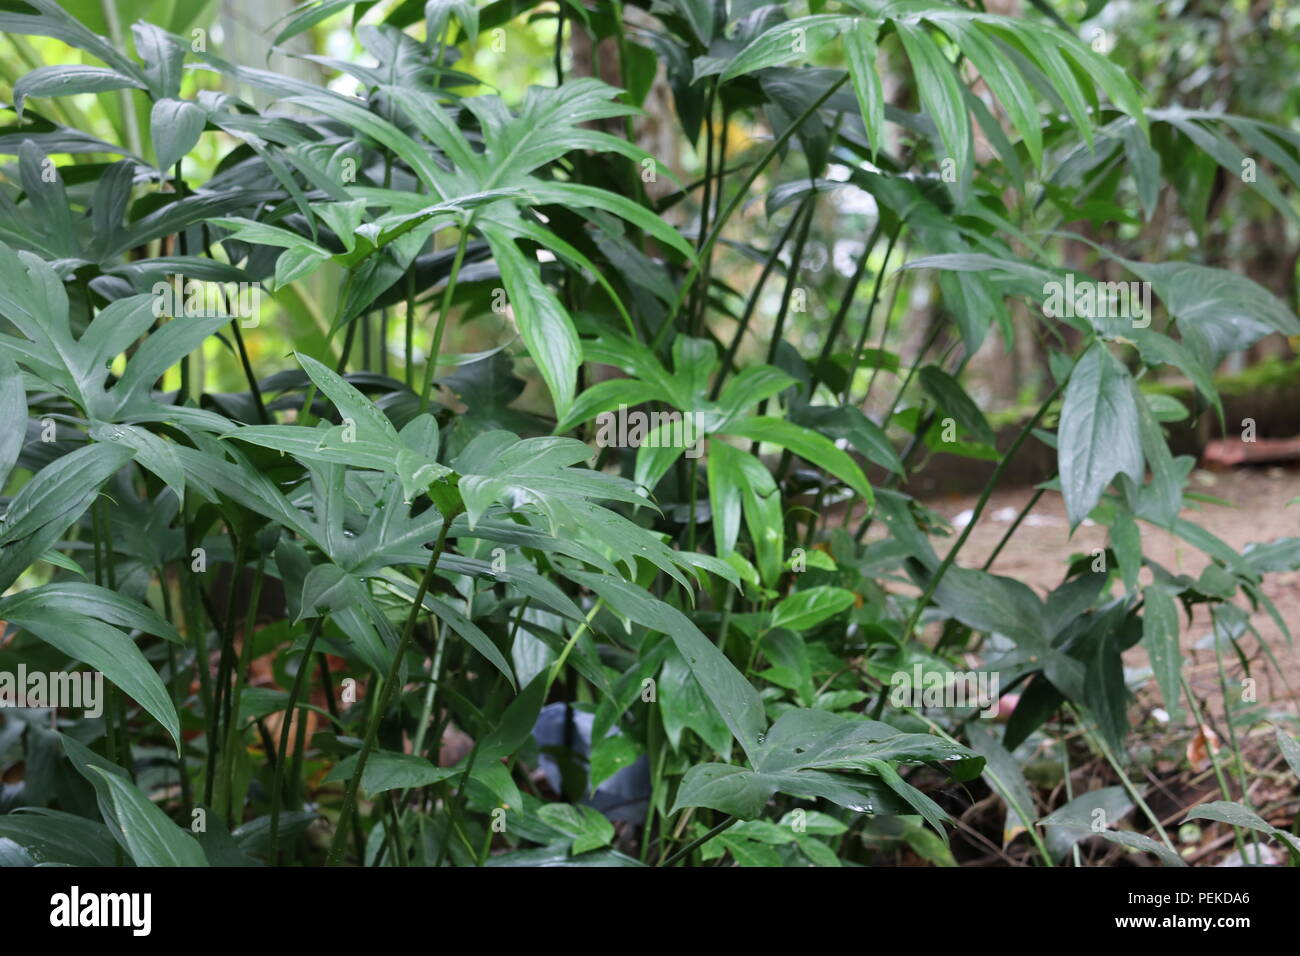 Lasia Plants Stock Photo